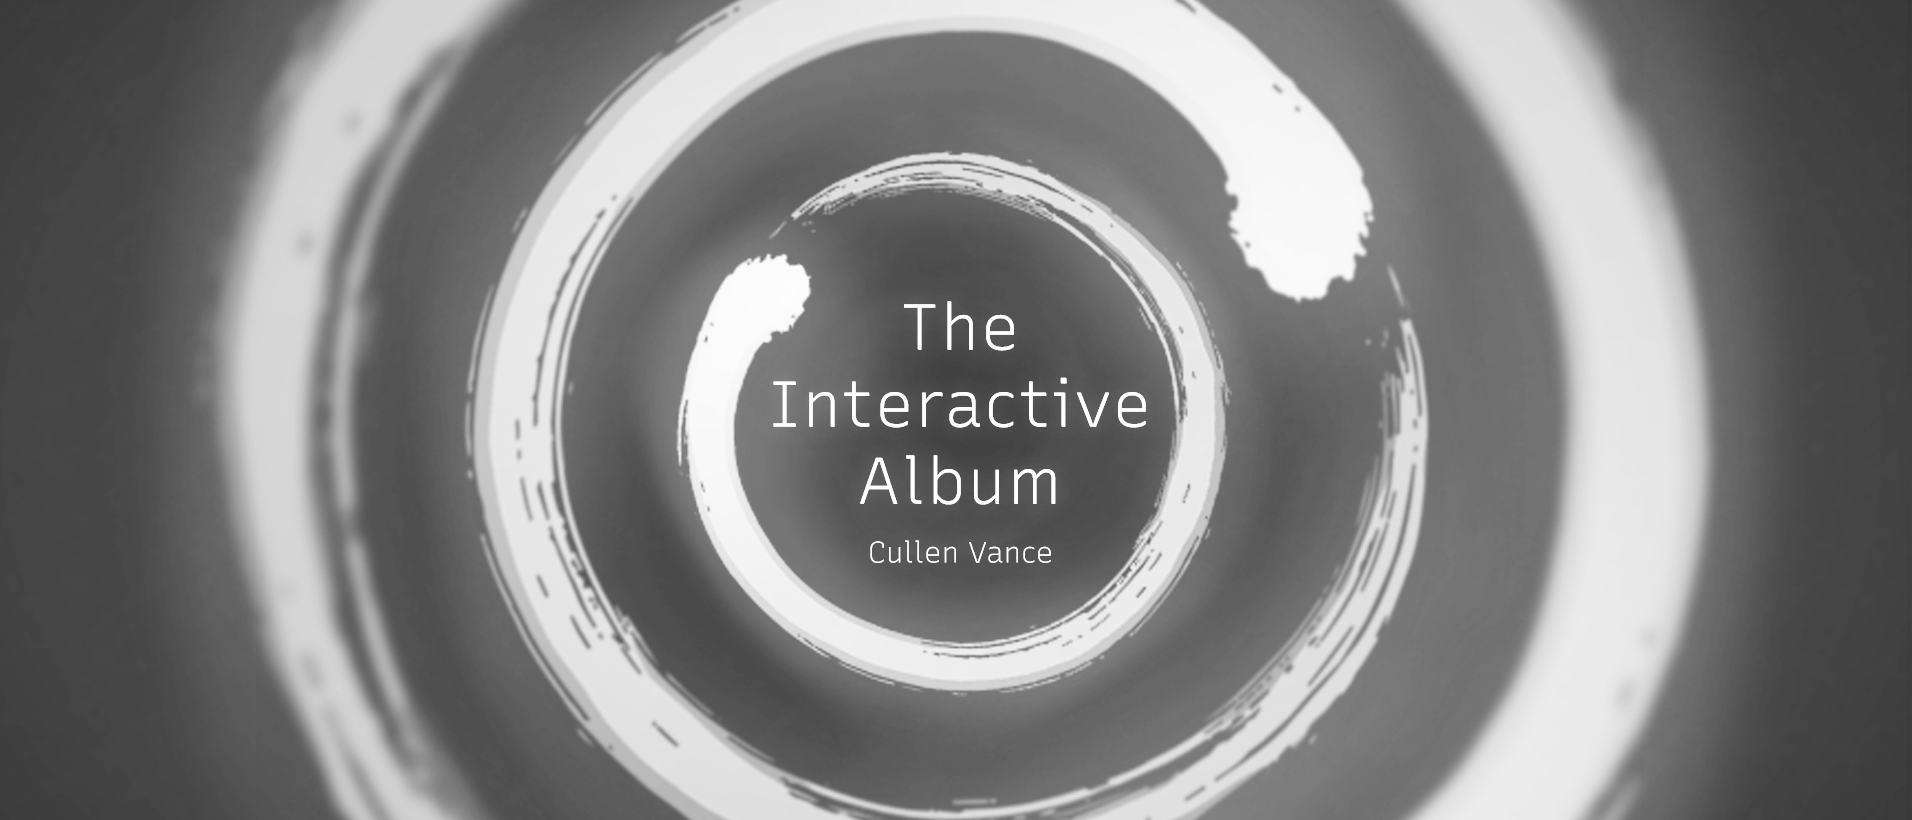 The Interactive Album - Cullen Vance